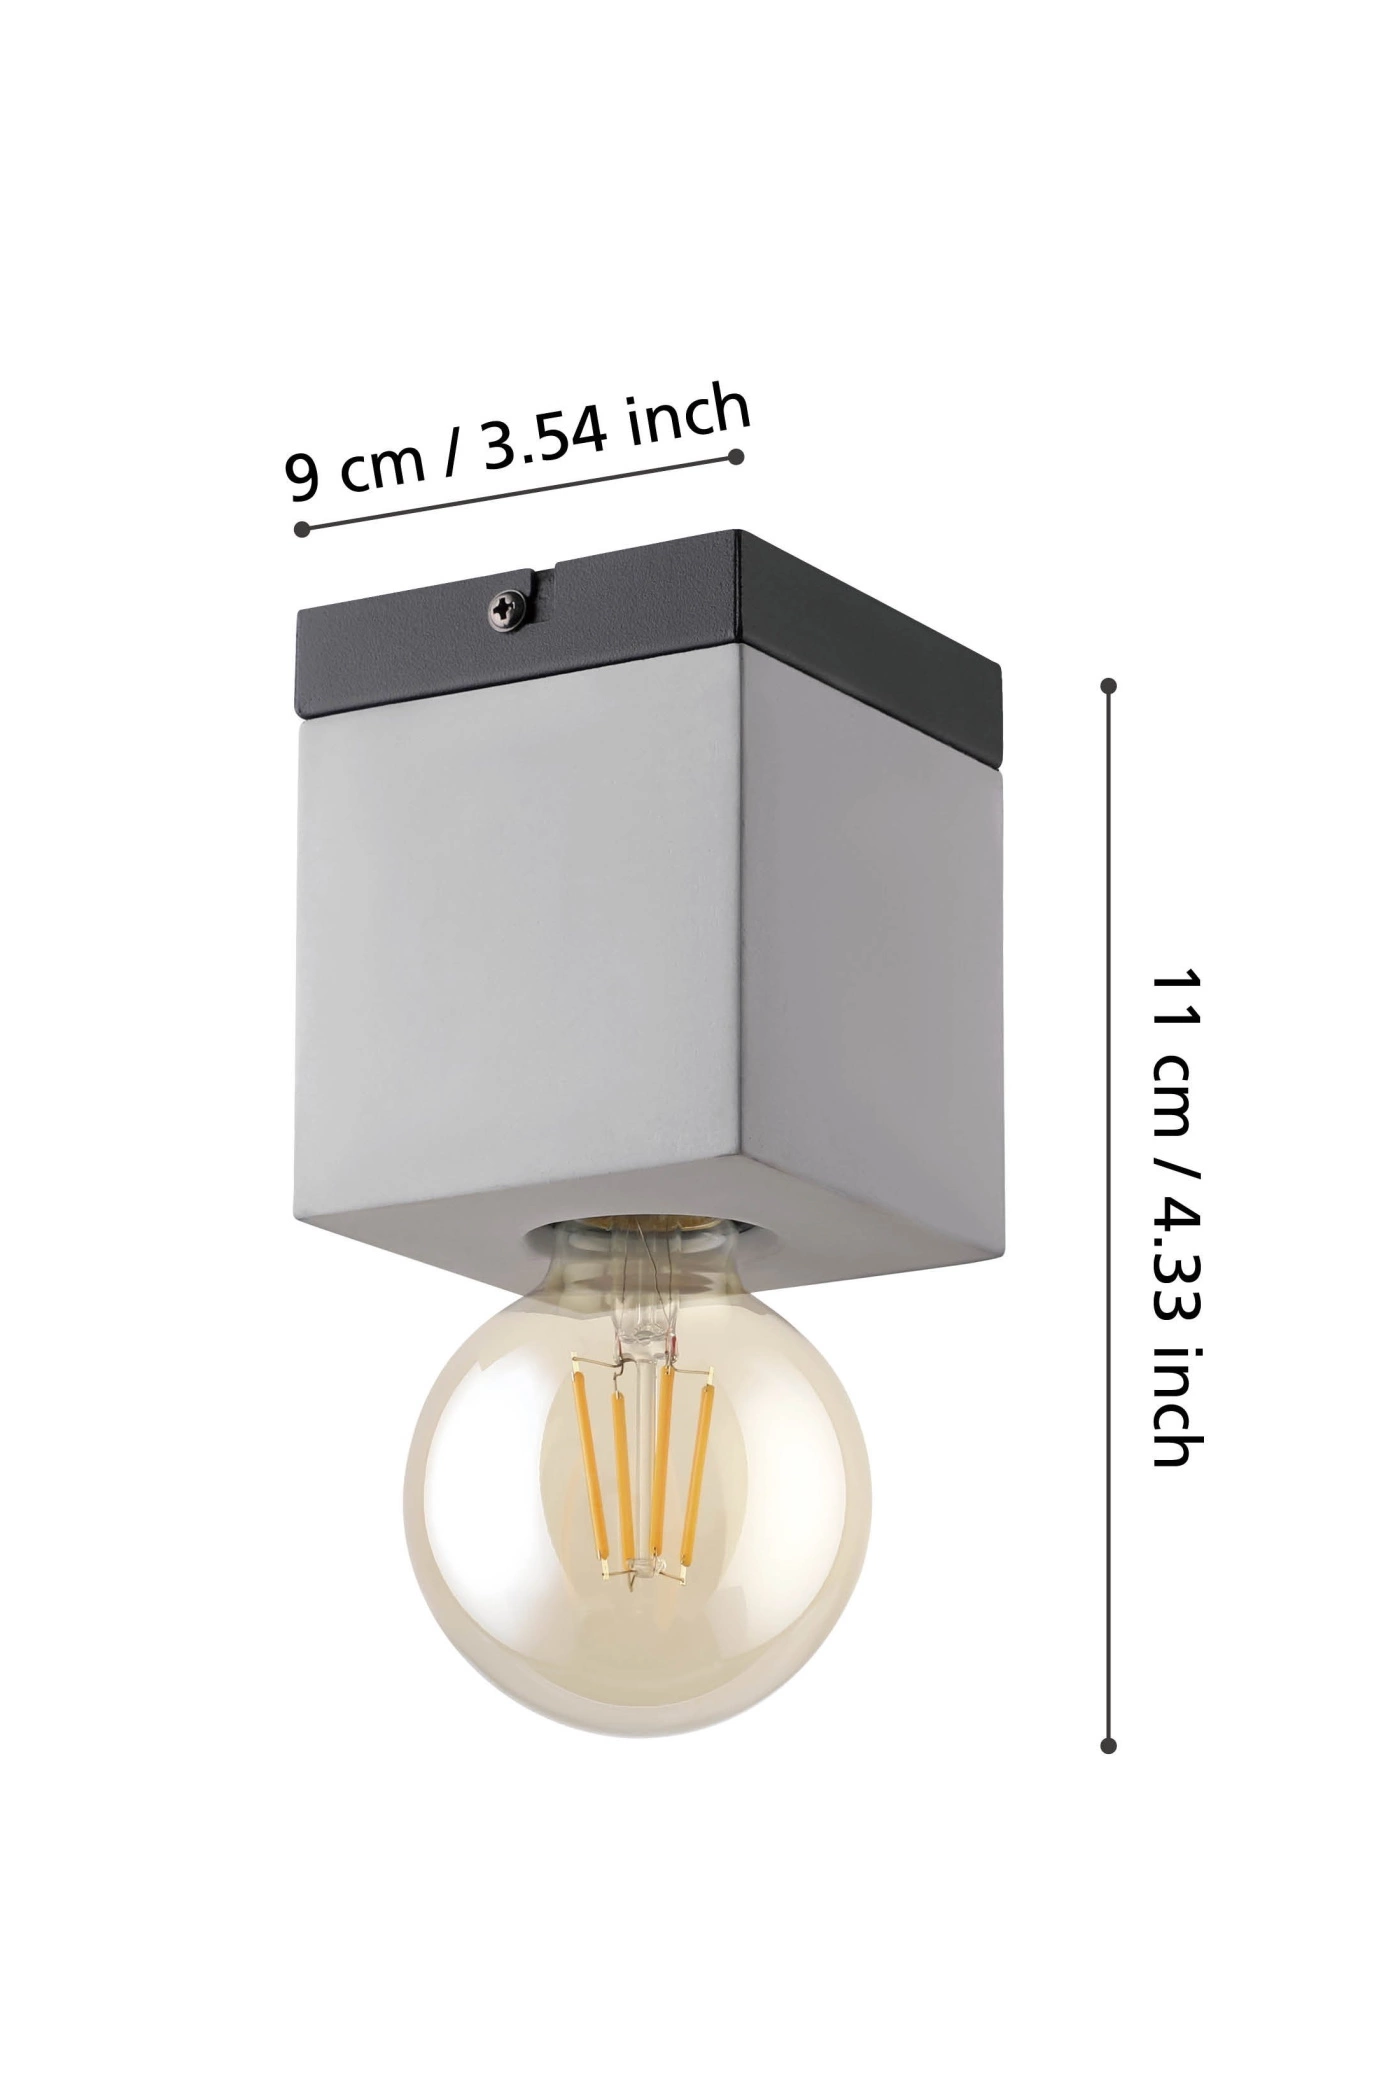   
                        
                        Точечный светильник EGLO (Австрия) 54146    
                         в стиле Лофт.  
                        Тип источника света: светодиодная лампа, сменная.                         Форма: Куб.                                                                          фото 2